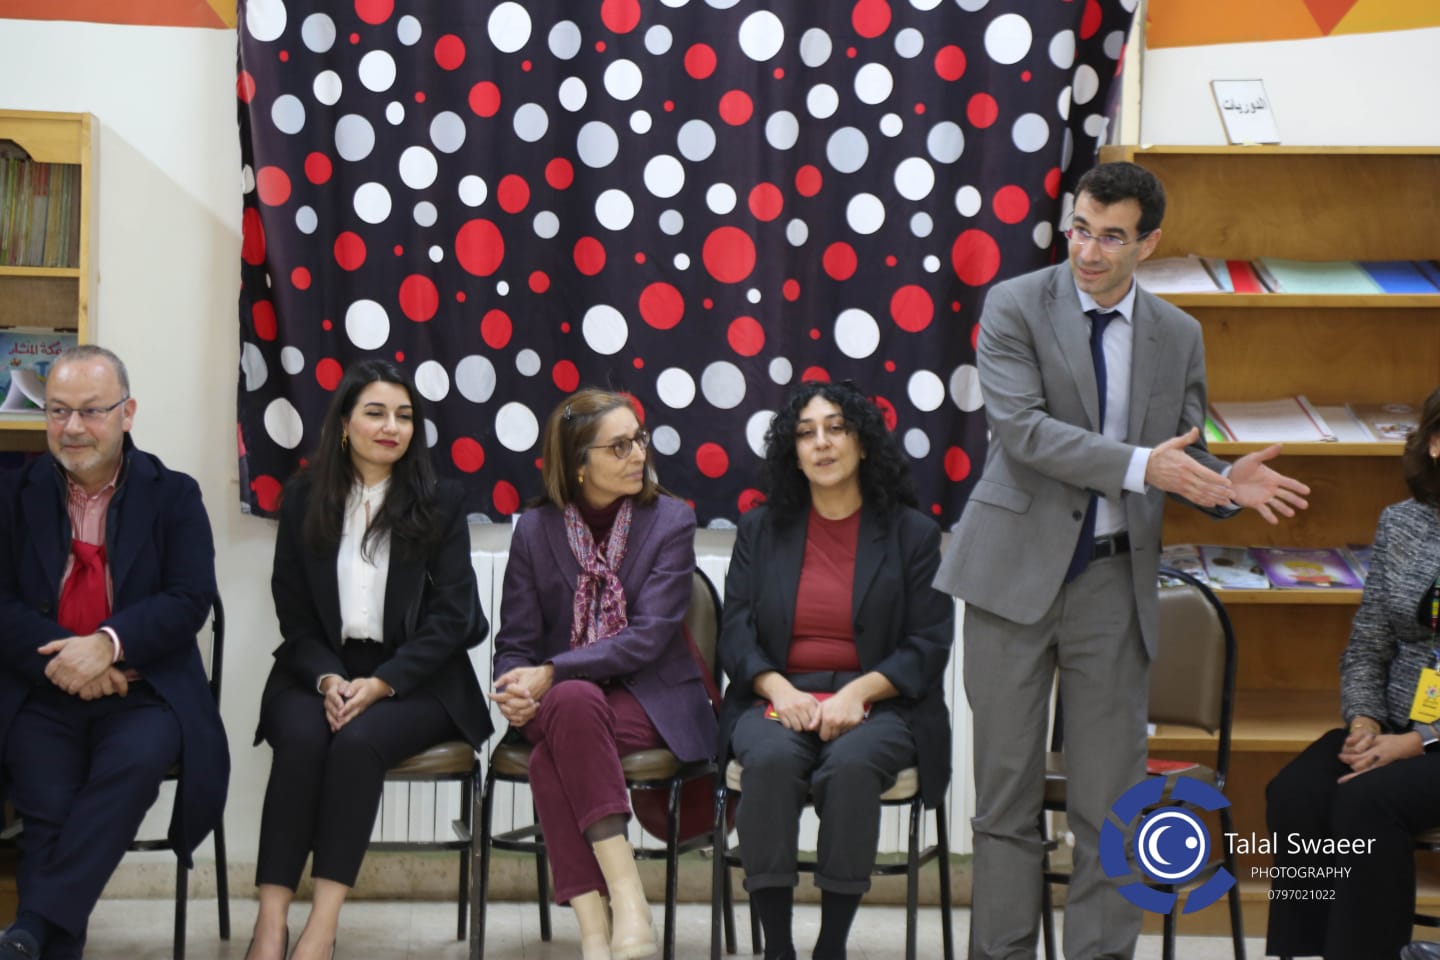 الرحيلة تستقبل سفير الاتحاد الأوروبي في الأردن في مديرية التربية والتعليم للواء ناعور